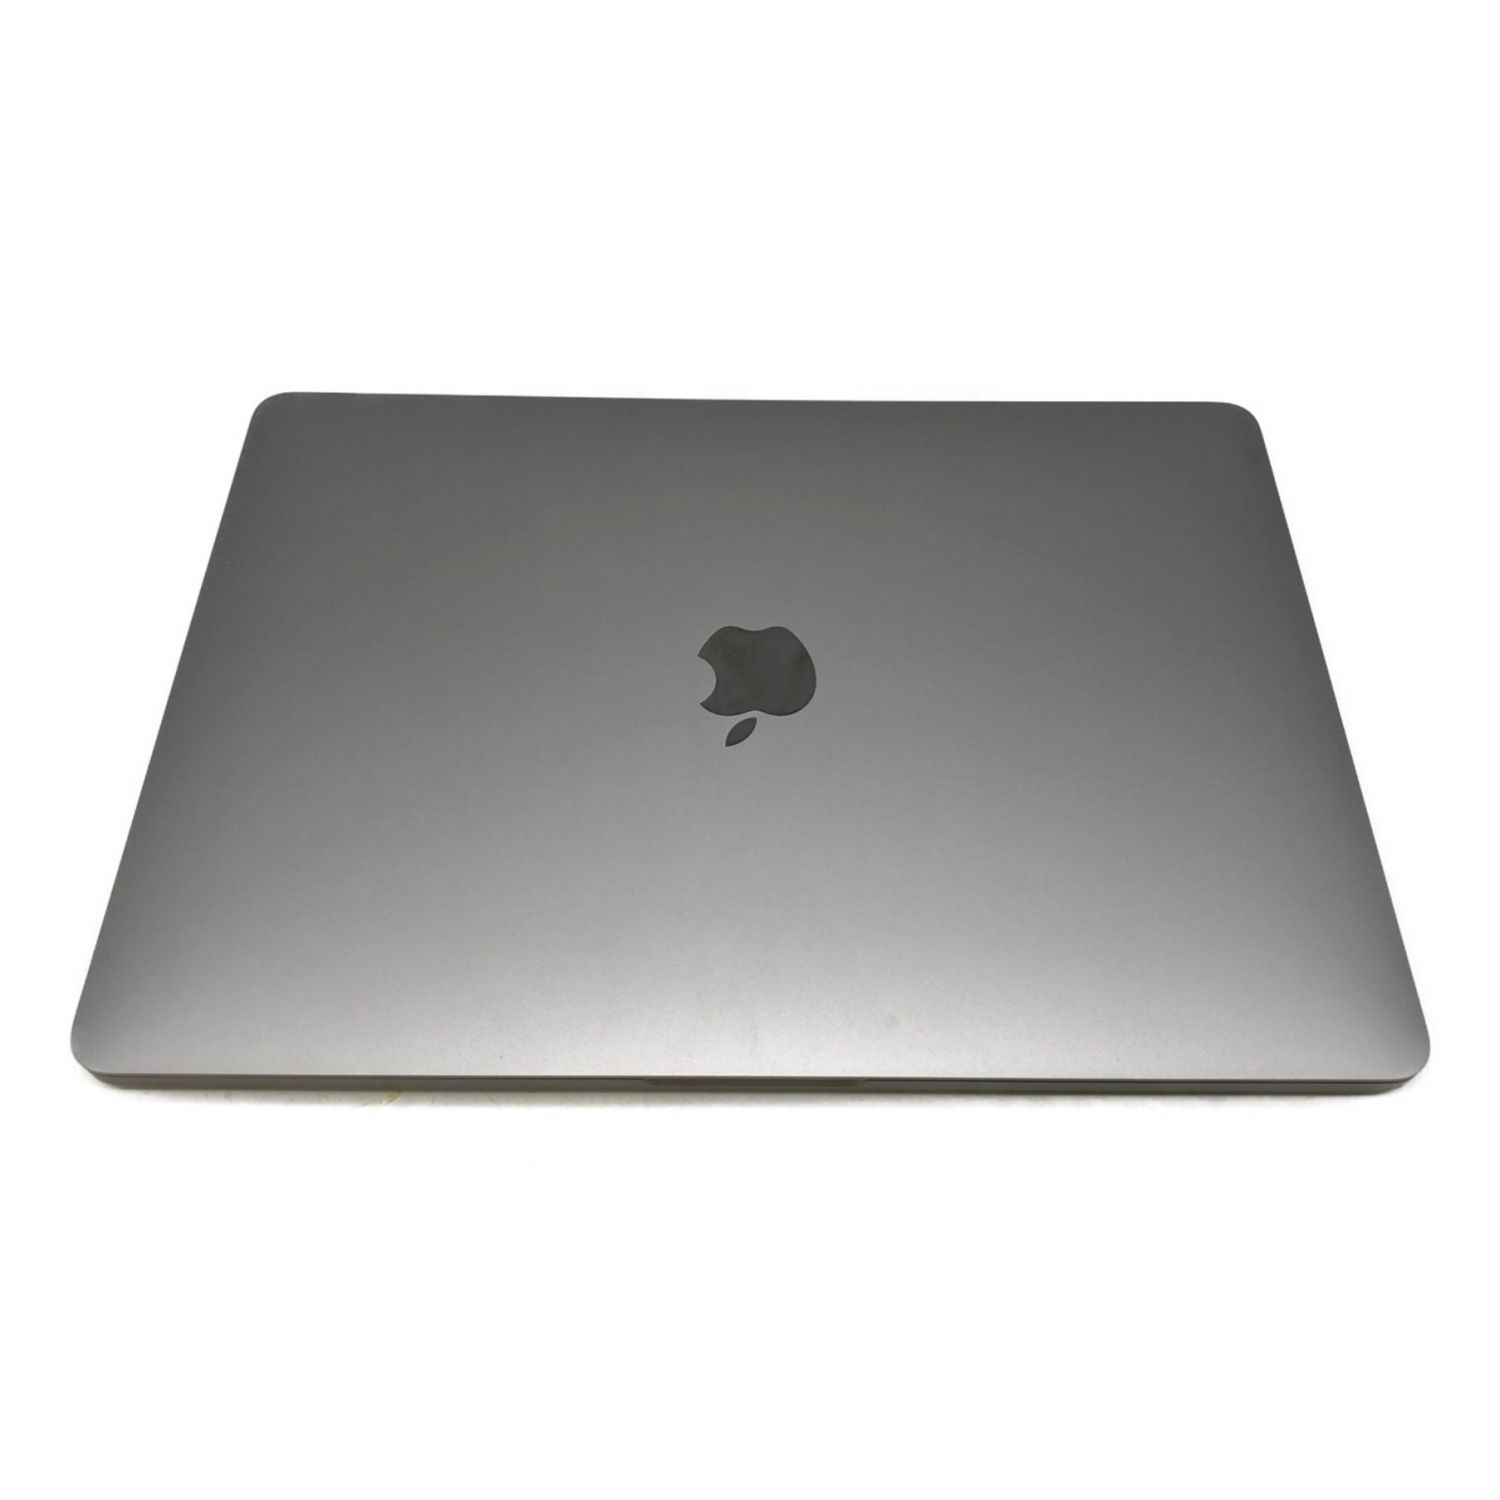 【おまけ付き!!】13インチMacBook Pro - スペースグレイ 2020